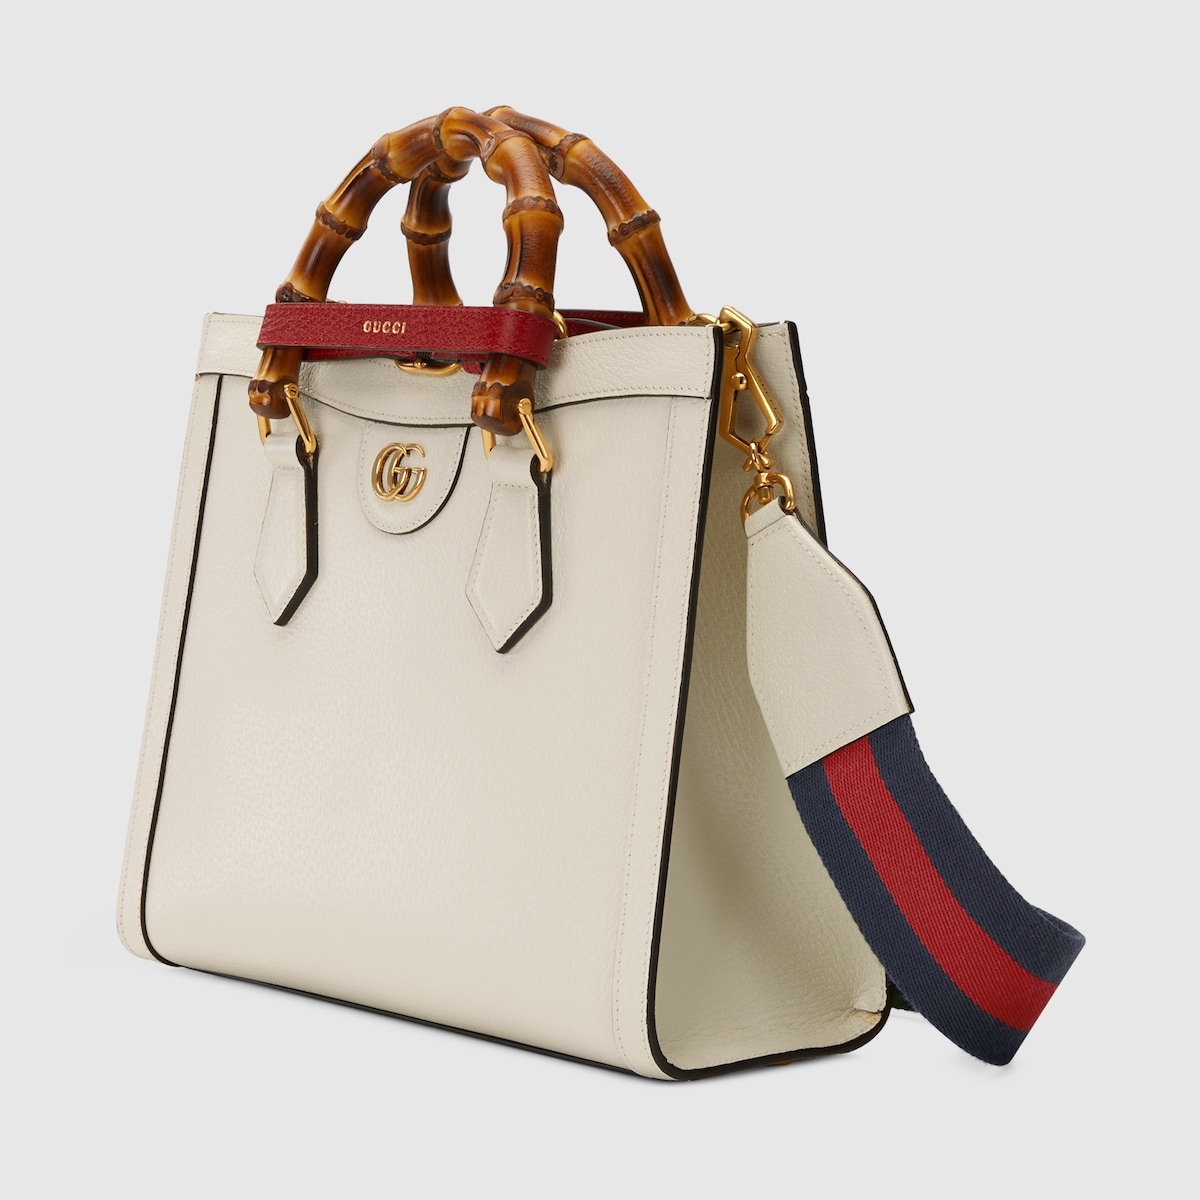 Gucci Diana small tote bag - 2